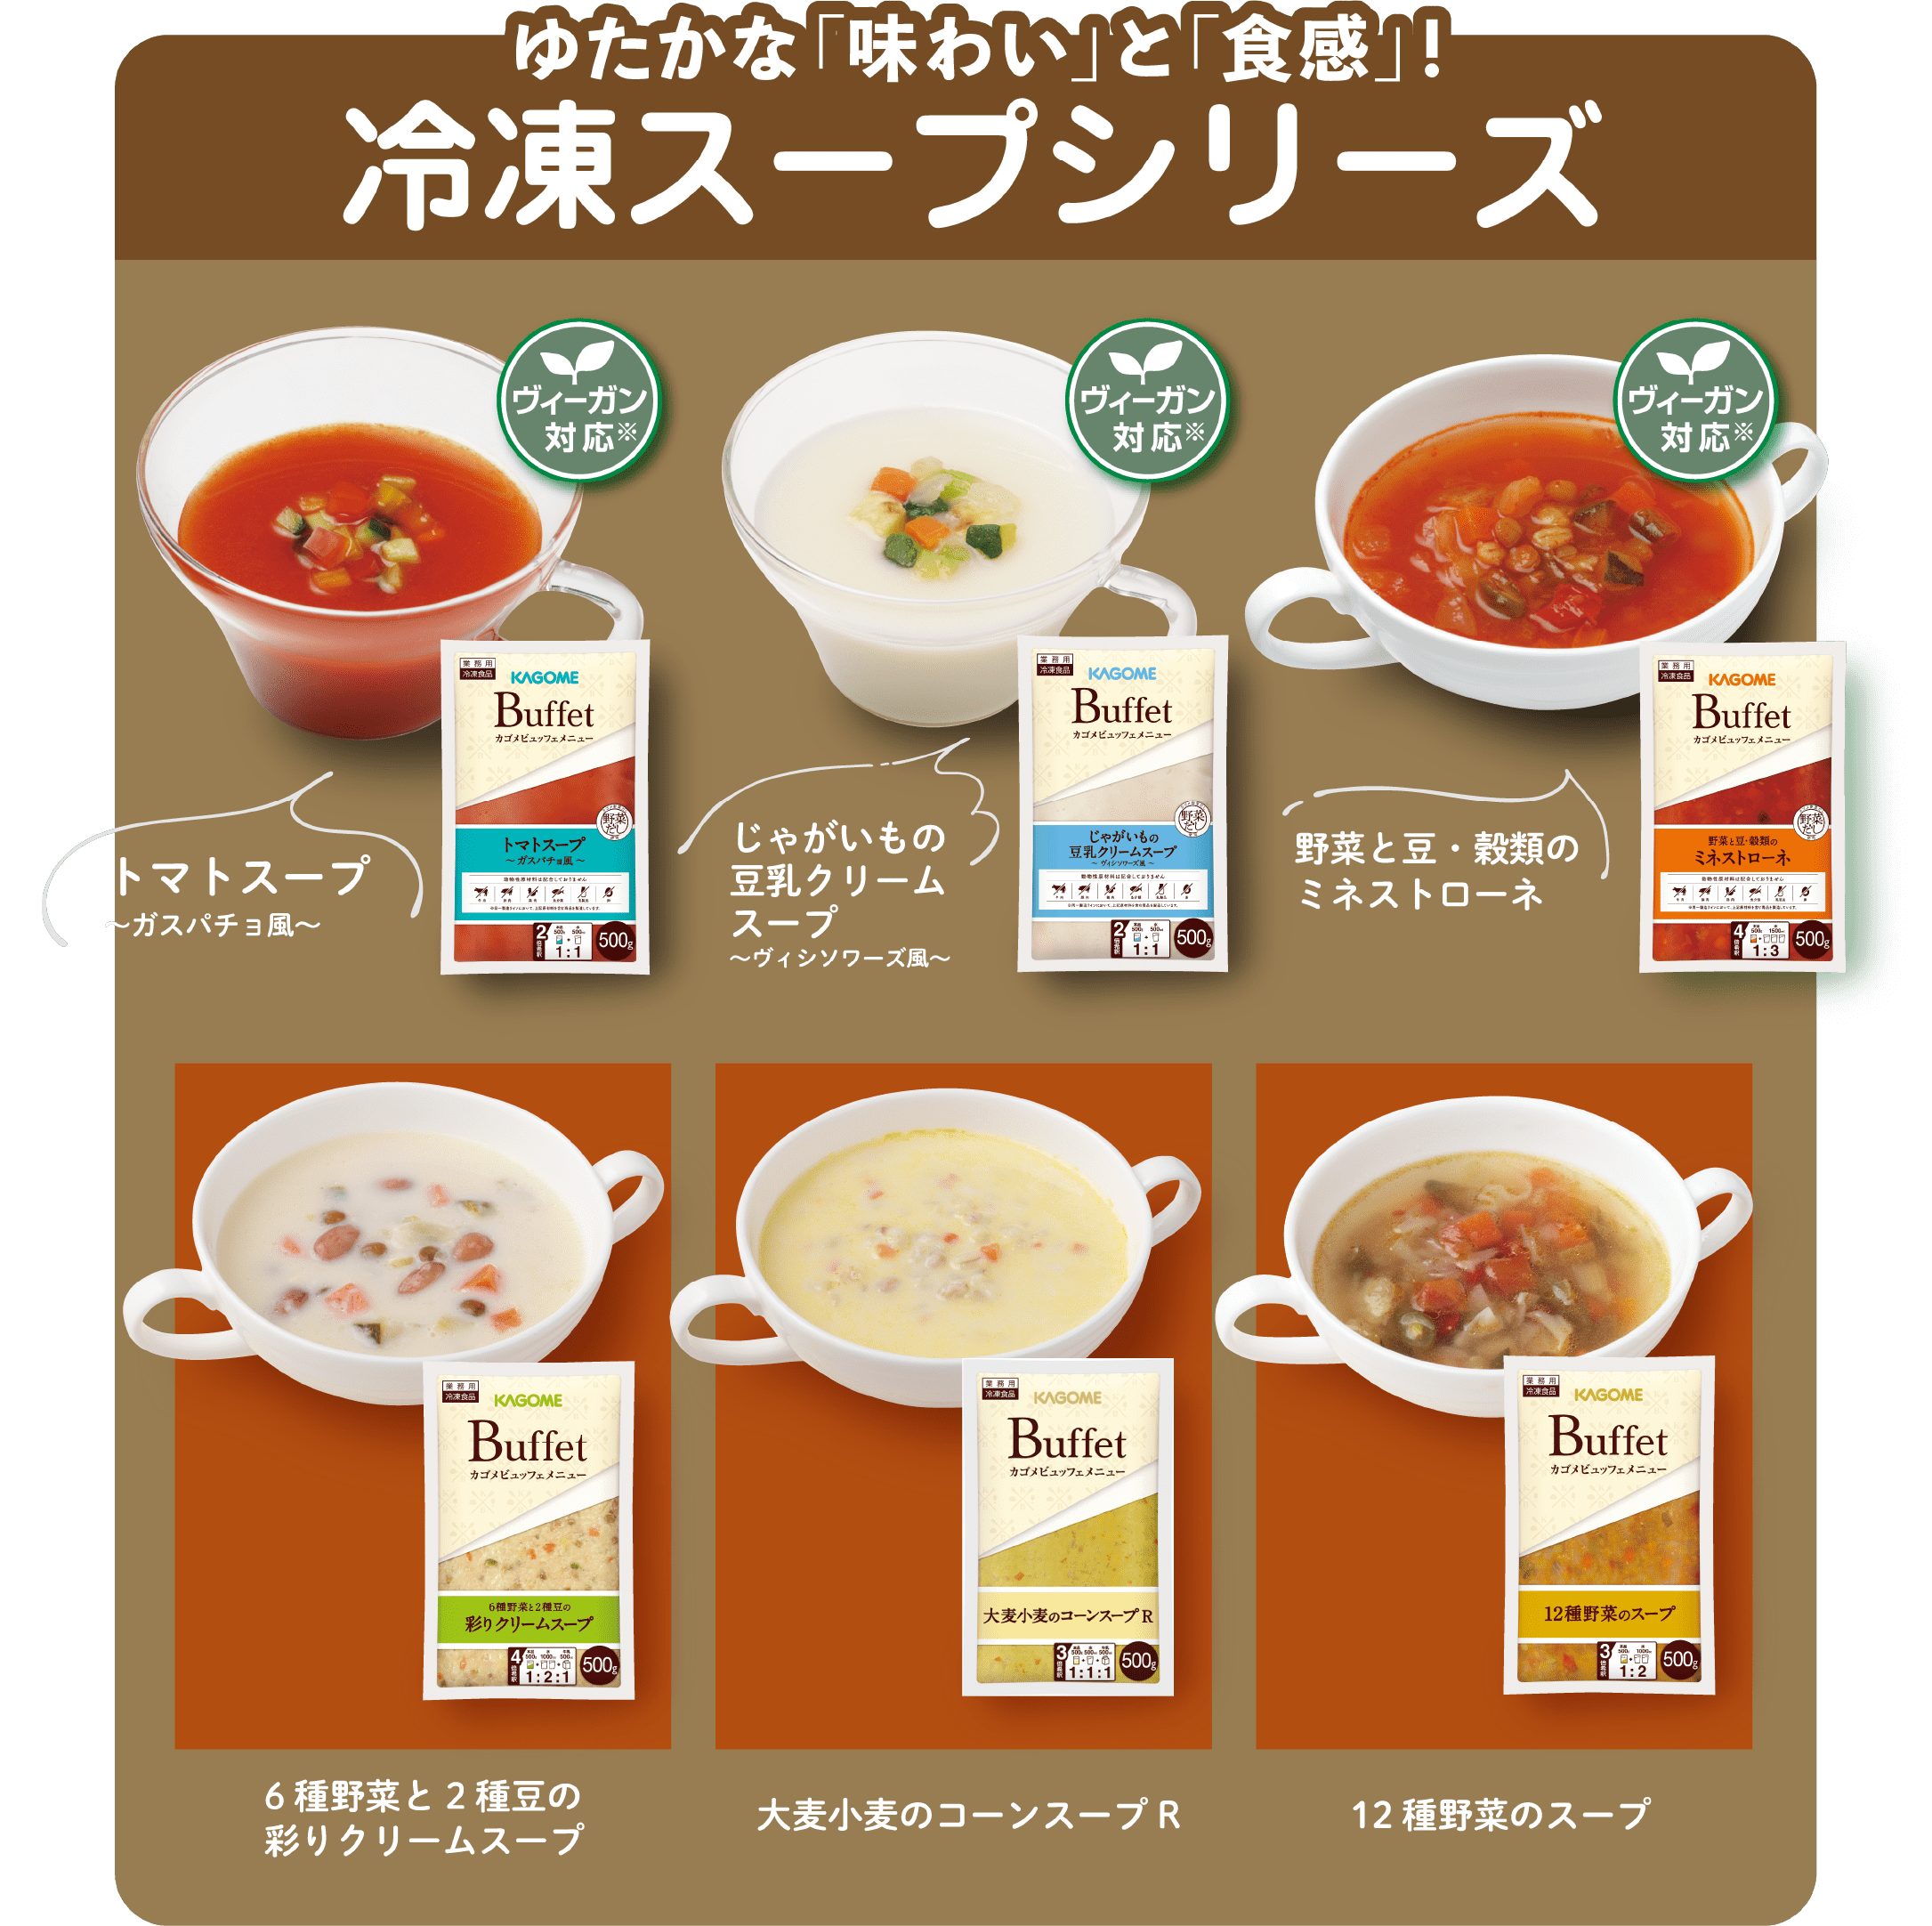 ゆたかな「味わい」と「食感」! 冷凍スープシリーズ